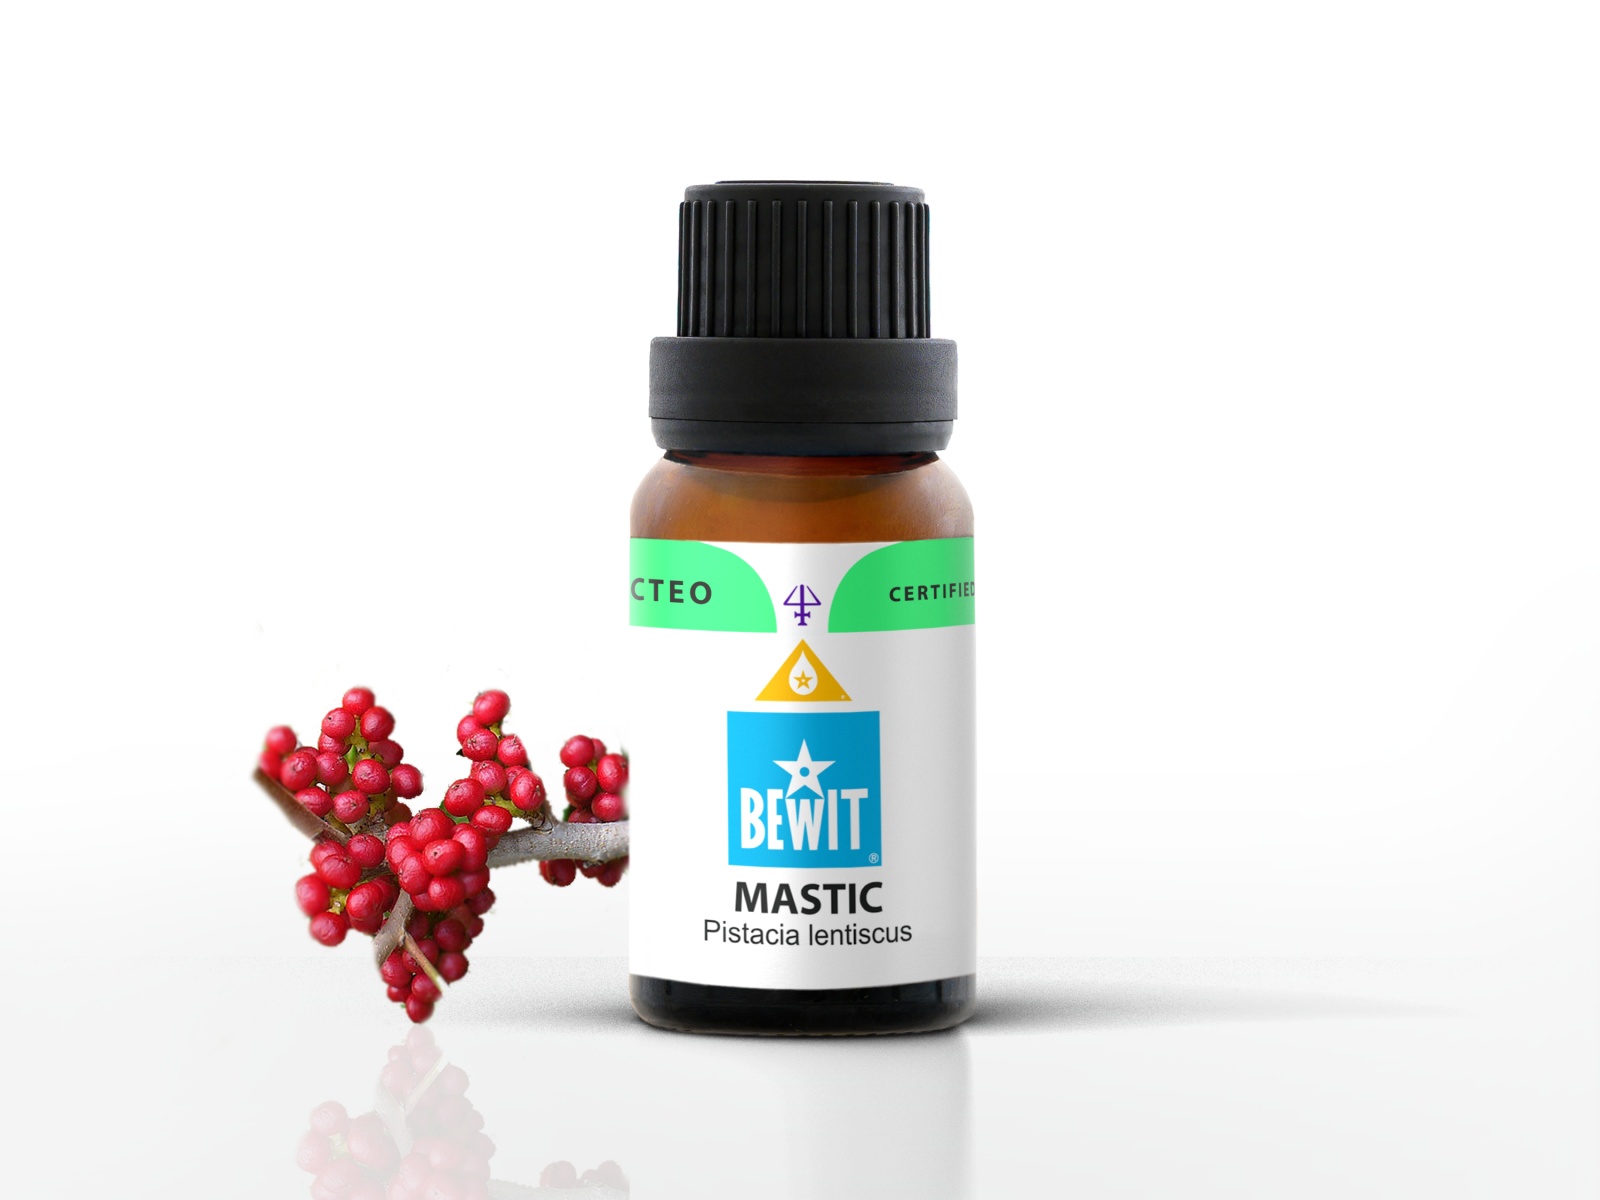 BEWIT Mastic - 100% pure essential oil